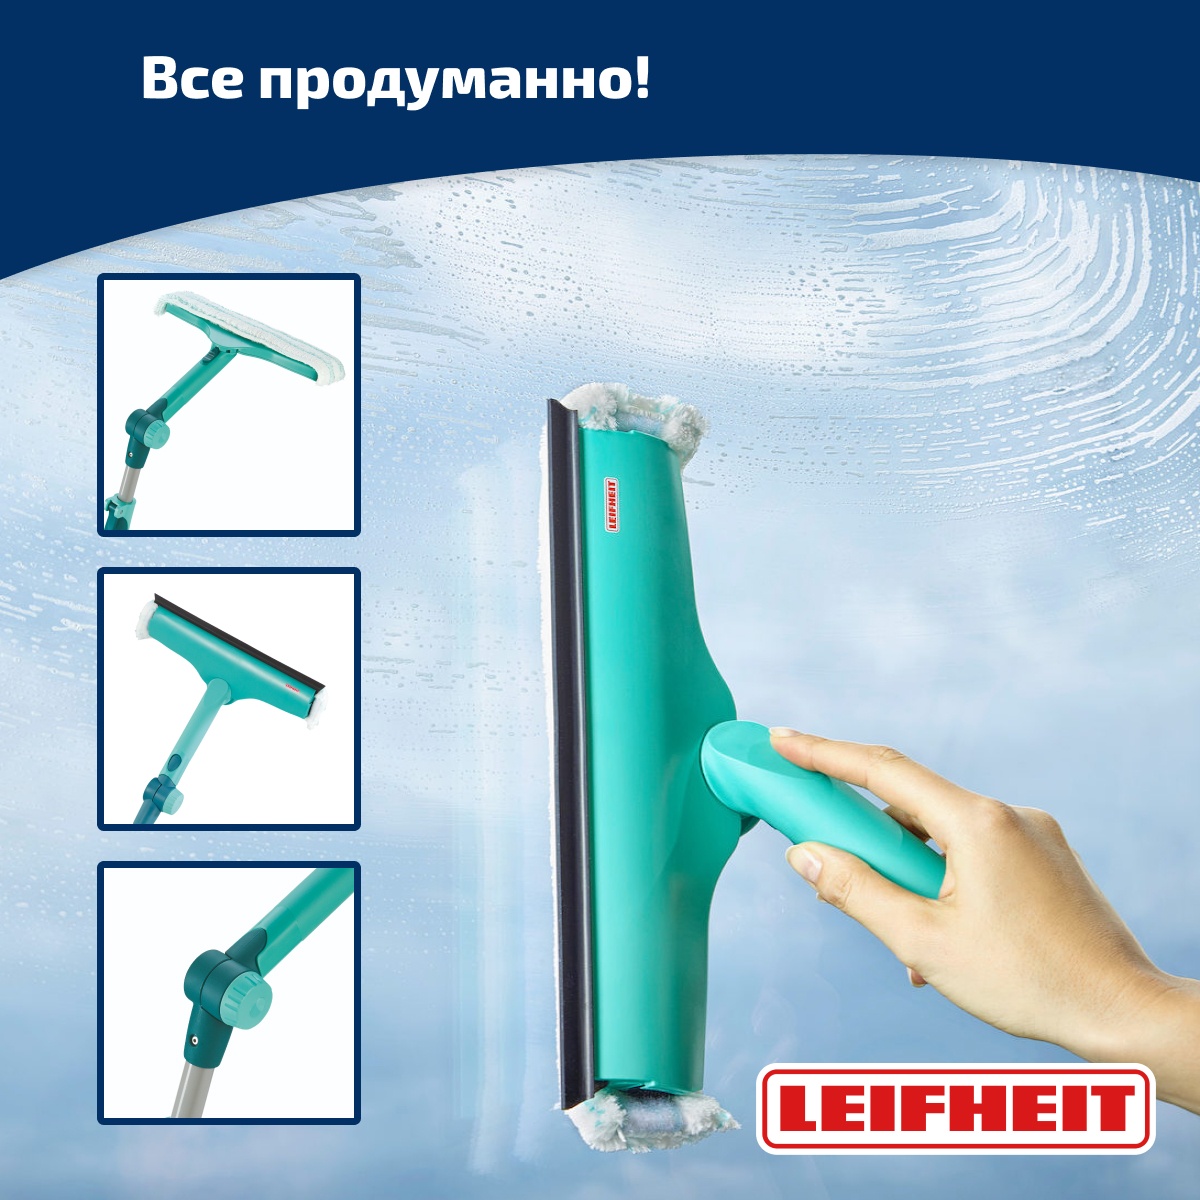 Щетка Leifheit W&F Cleaner L для мытья окон с губкой и телескопической ручкой, 110-190см Leifheit 51120, цвет зеленый - фото 3